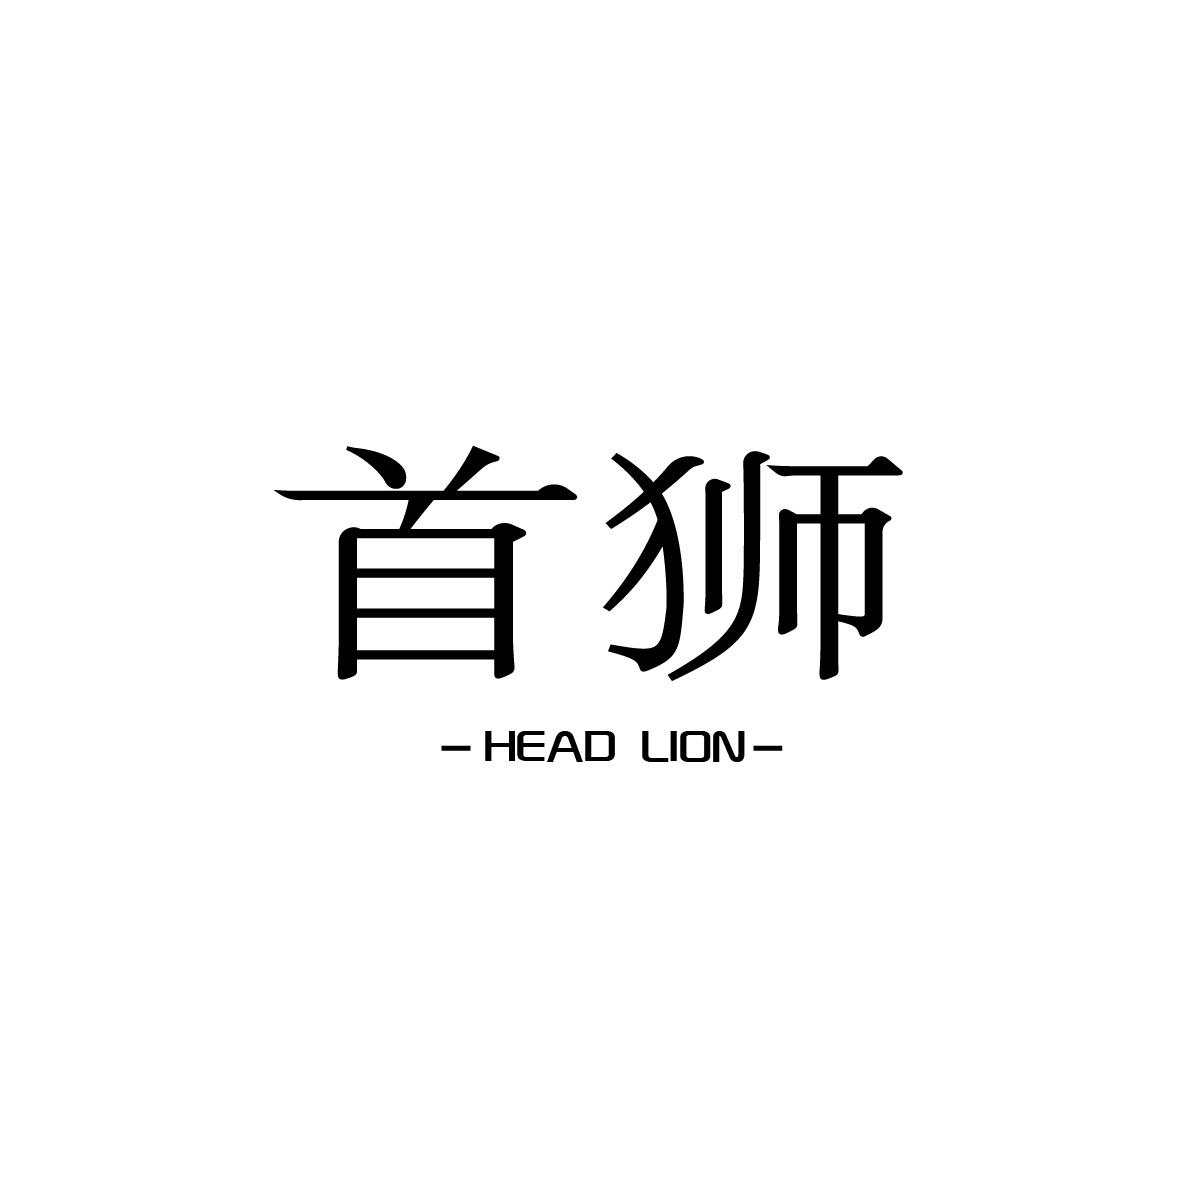 首狮 HEAD LION